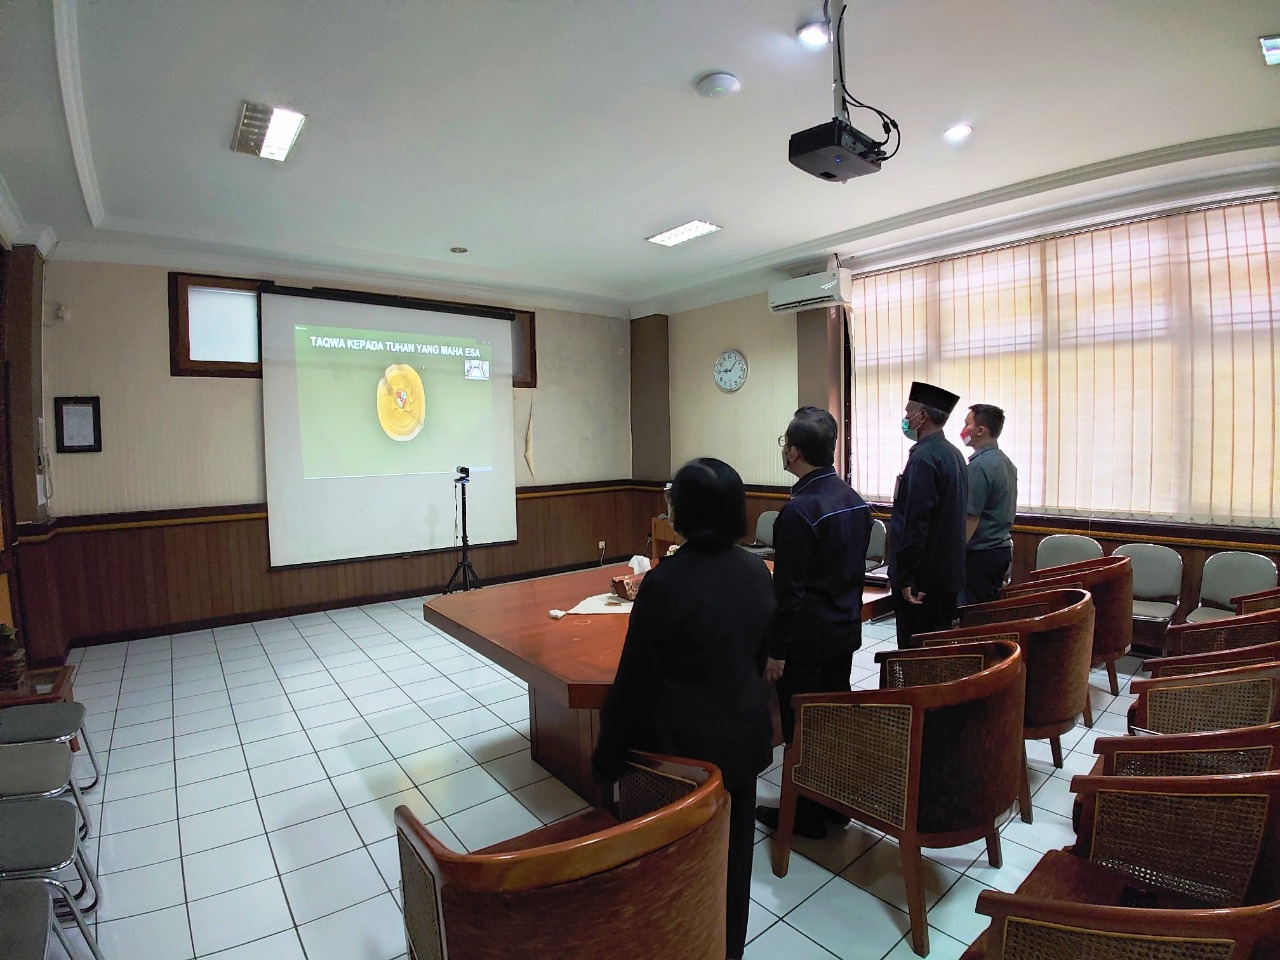 Pengadilan Negeri Yogyakarta Mengikuti Sosialisasi Aplikasi e-Berpadu